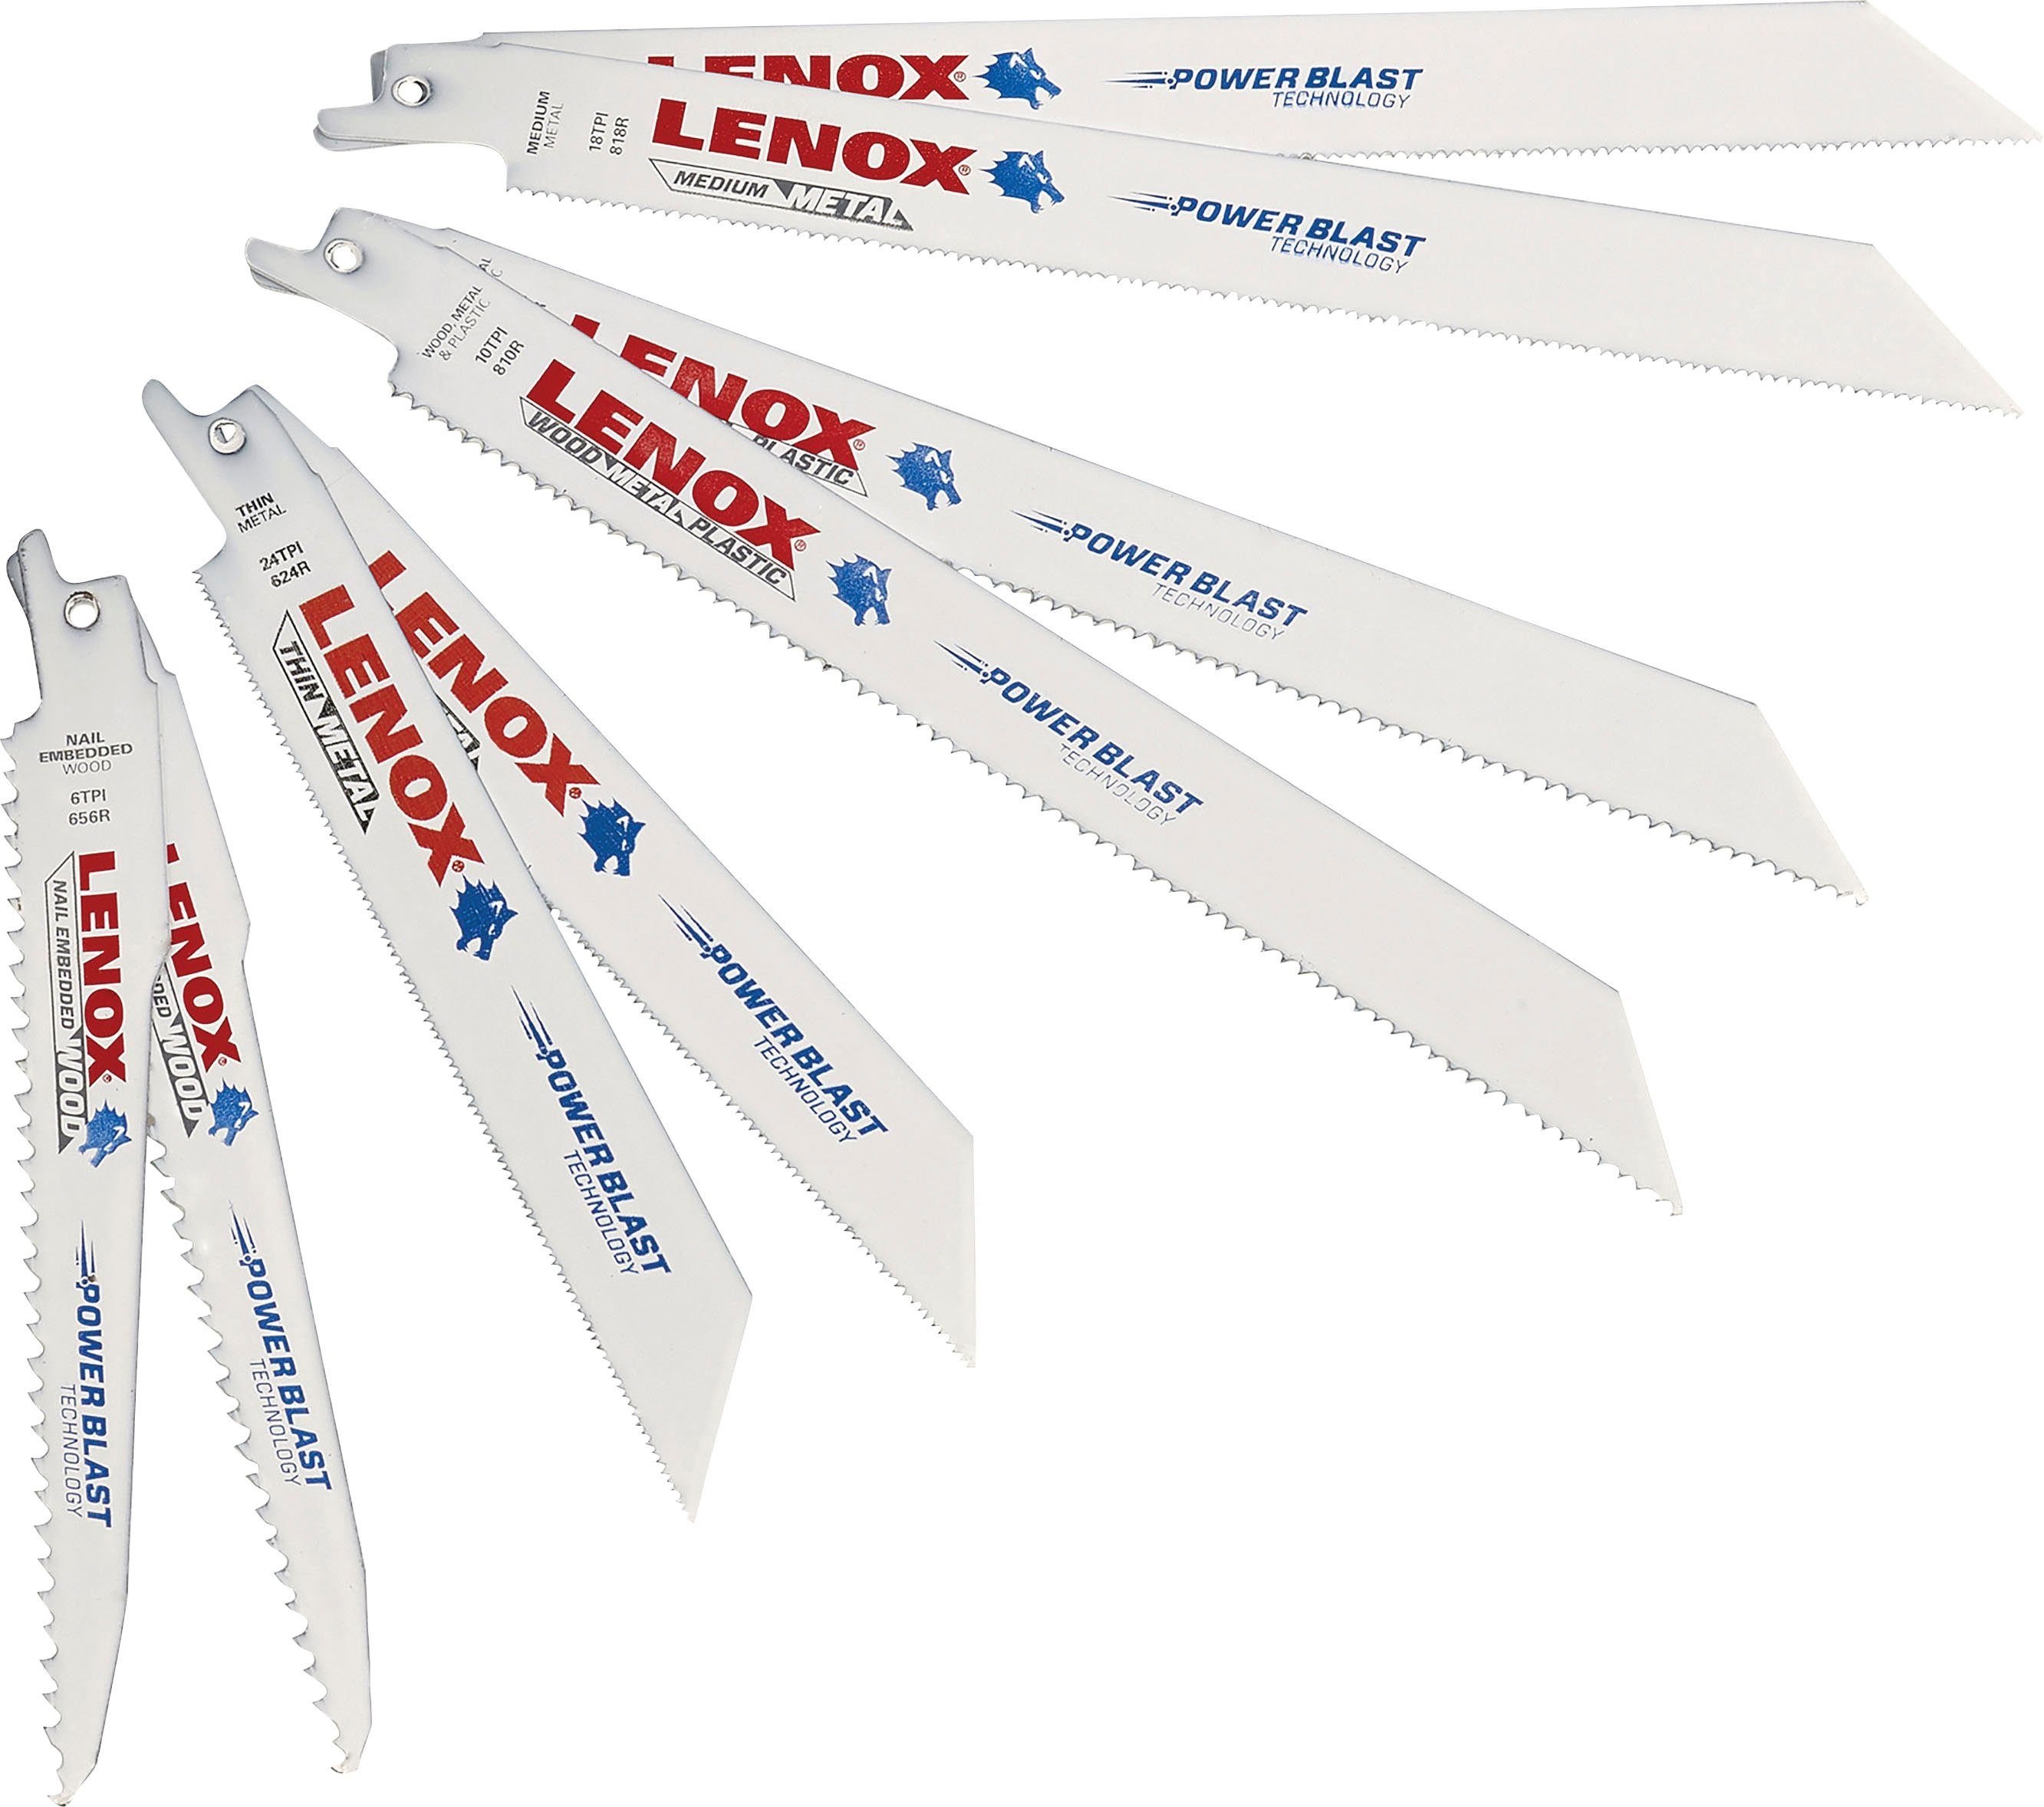 Lenox Säbelsägeblatt 121439KPE Set 9-tlg. für Holz und Metall, 2x 656R, 2x 624R, 2x 810R, 2x 818R, 1x 960R